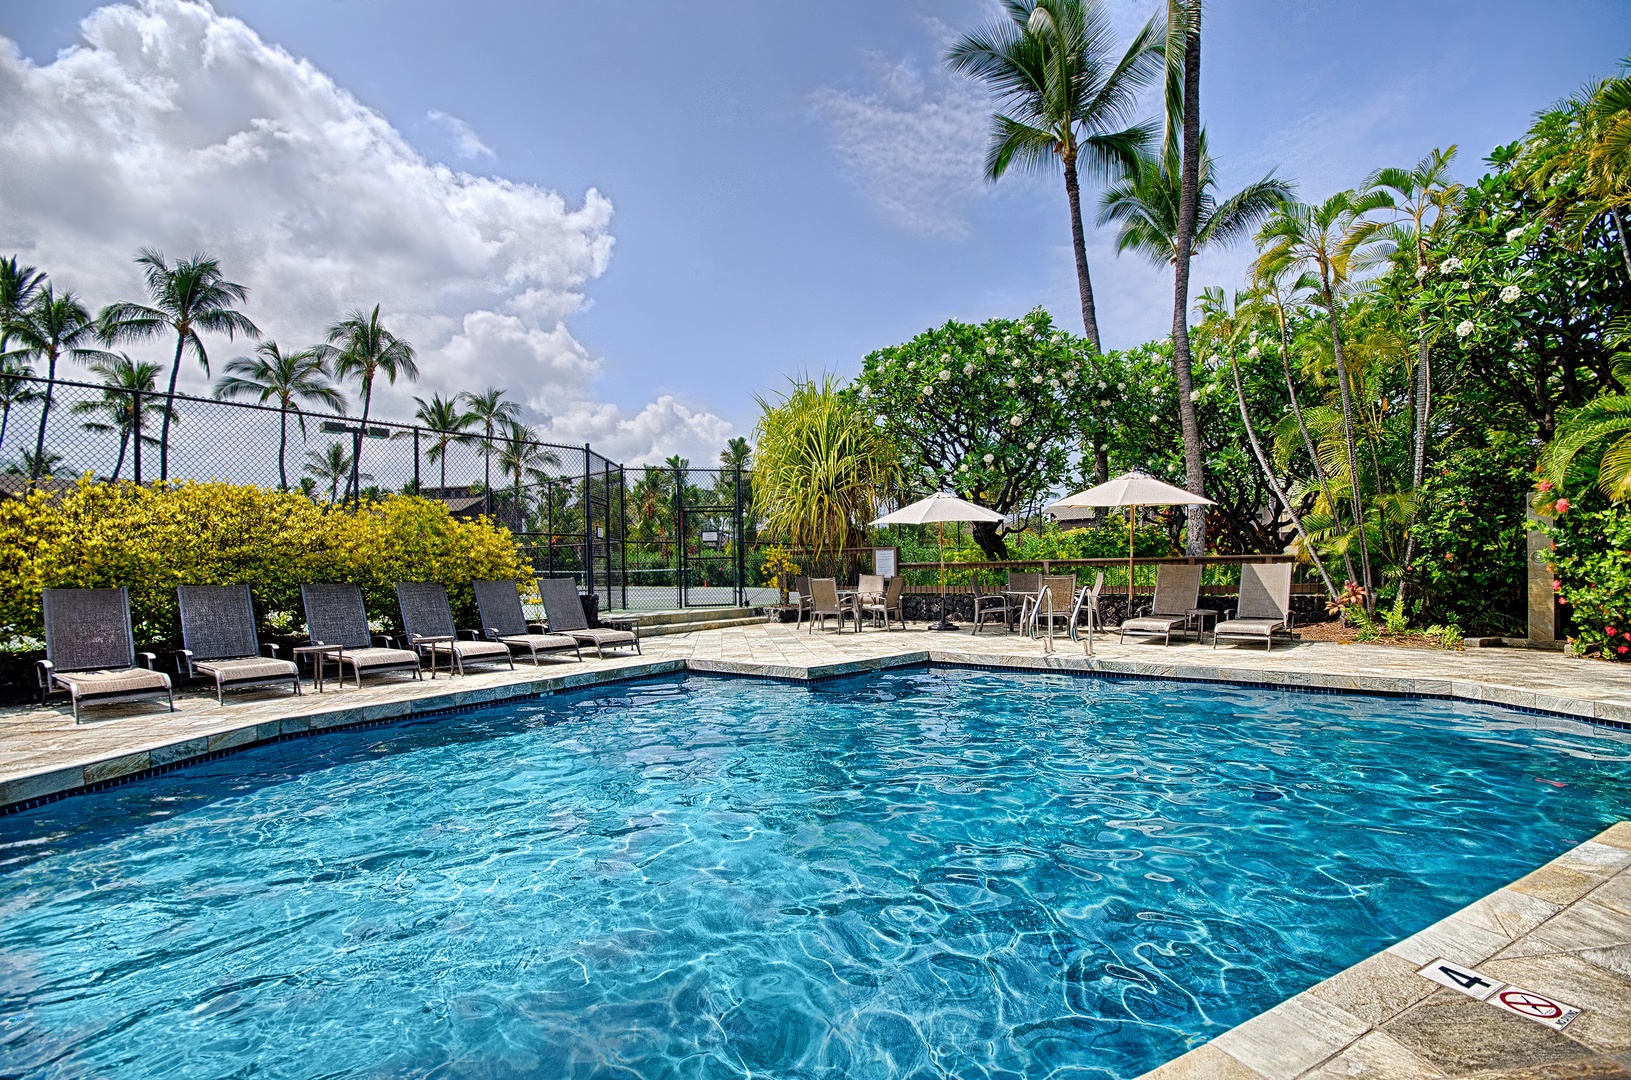 Kailua Kona Vacation Rentals, Kanaloa at Kona 701 - Complex pool, one of 3!